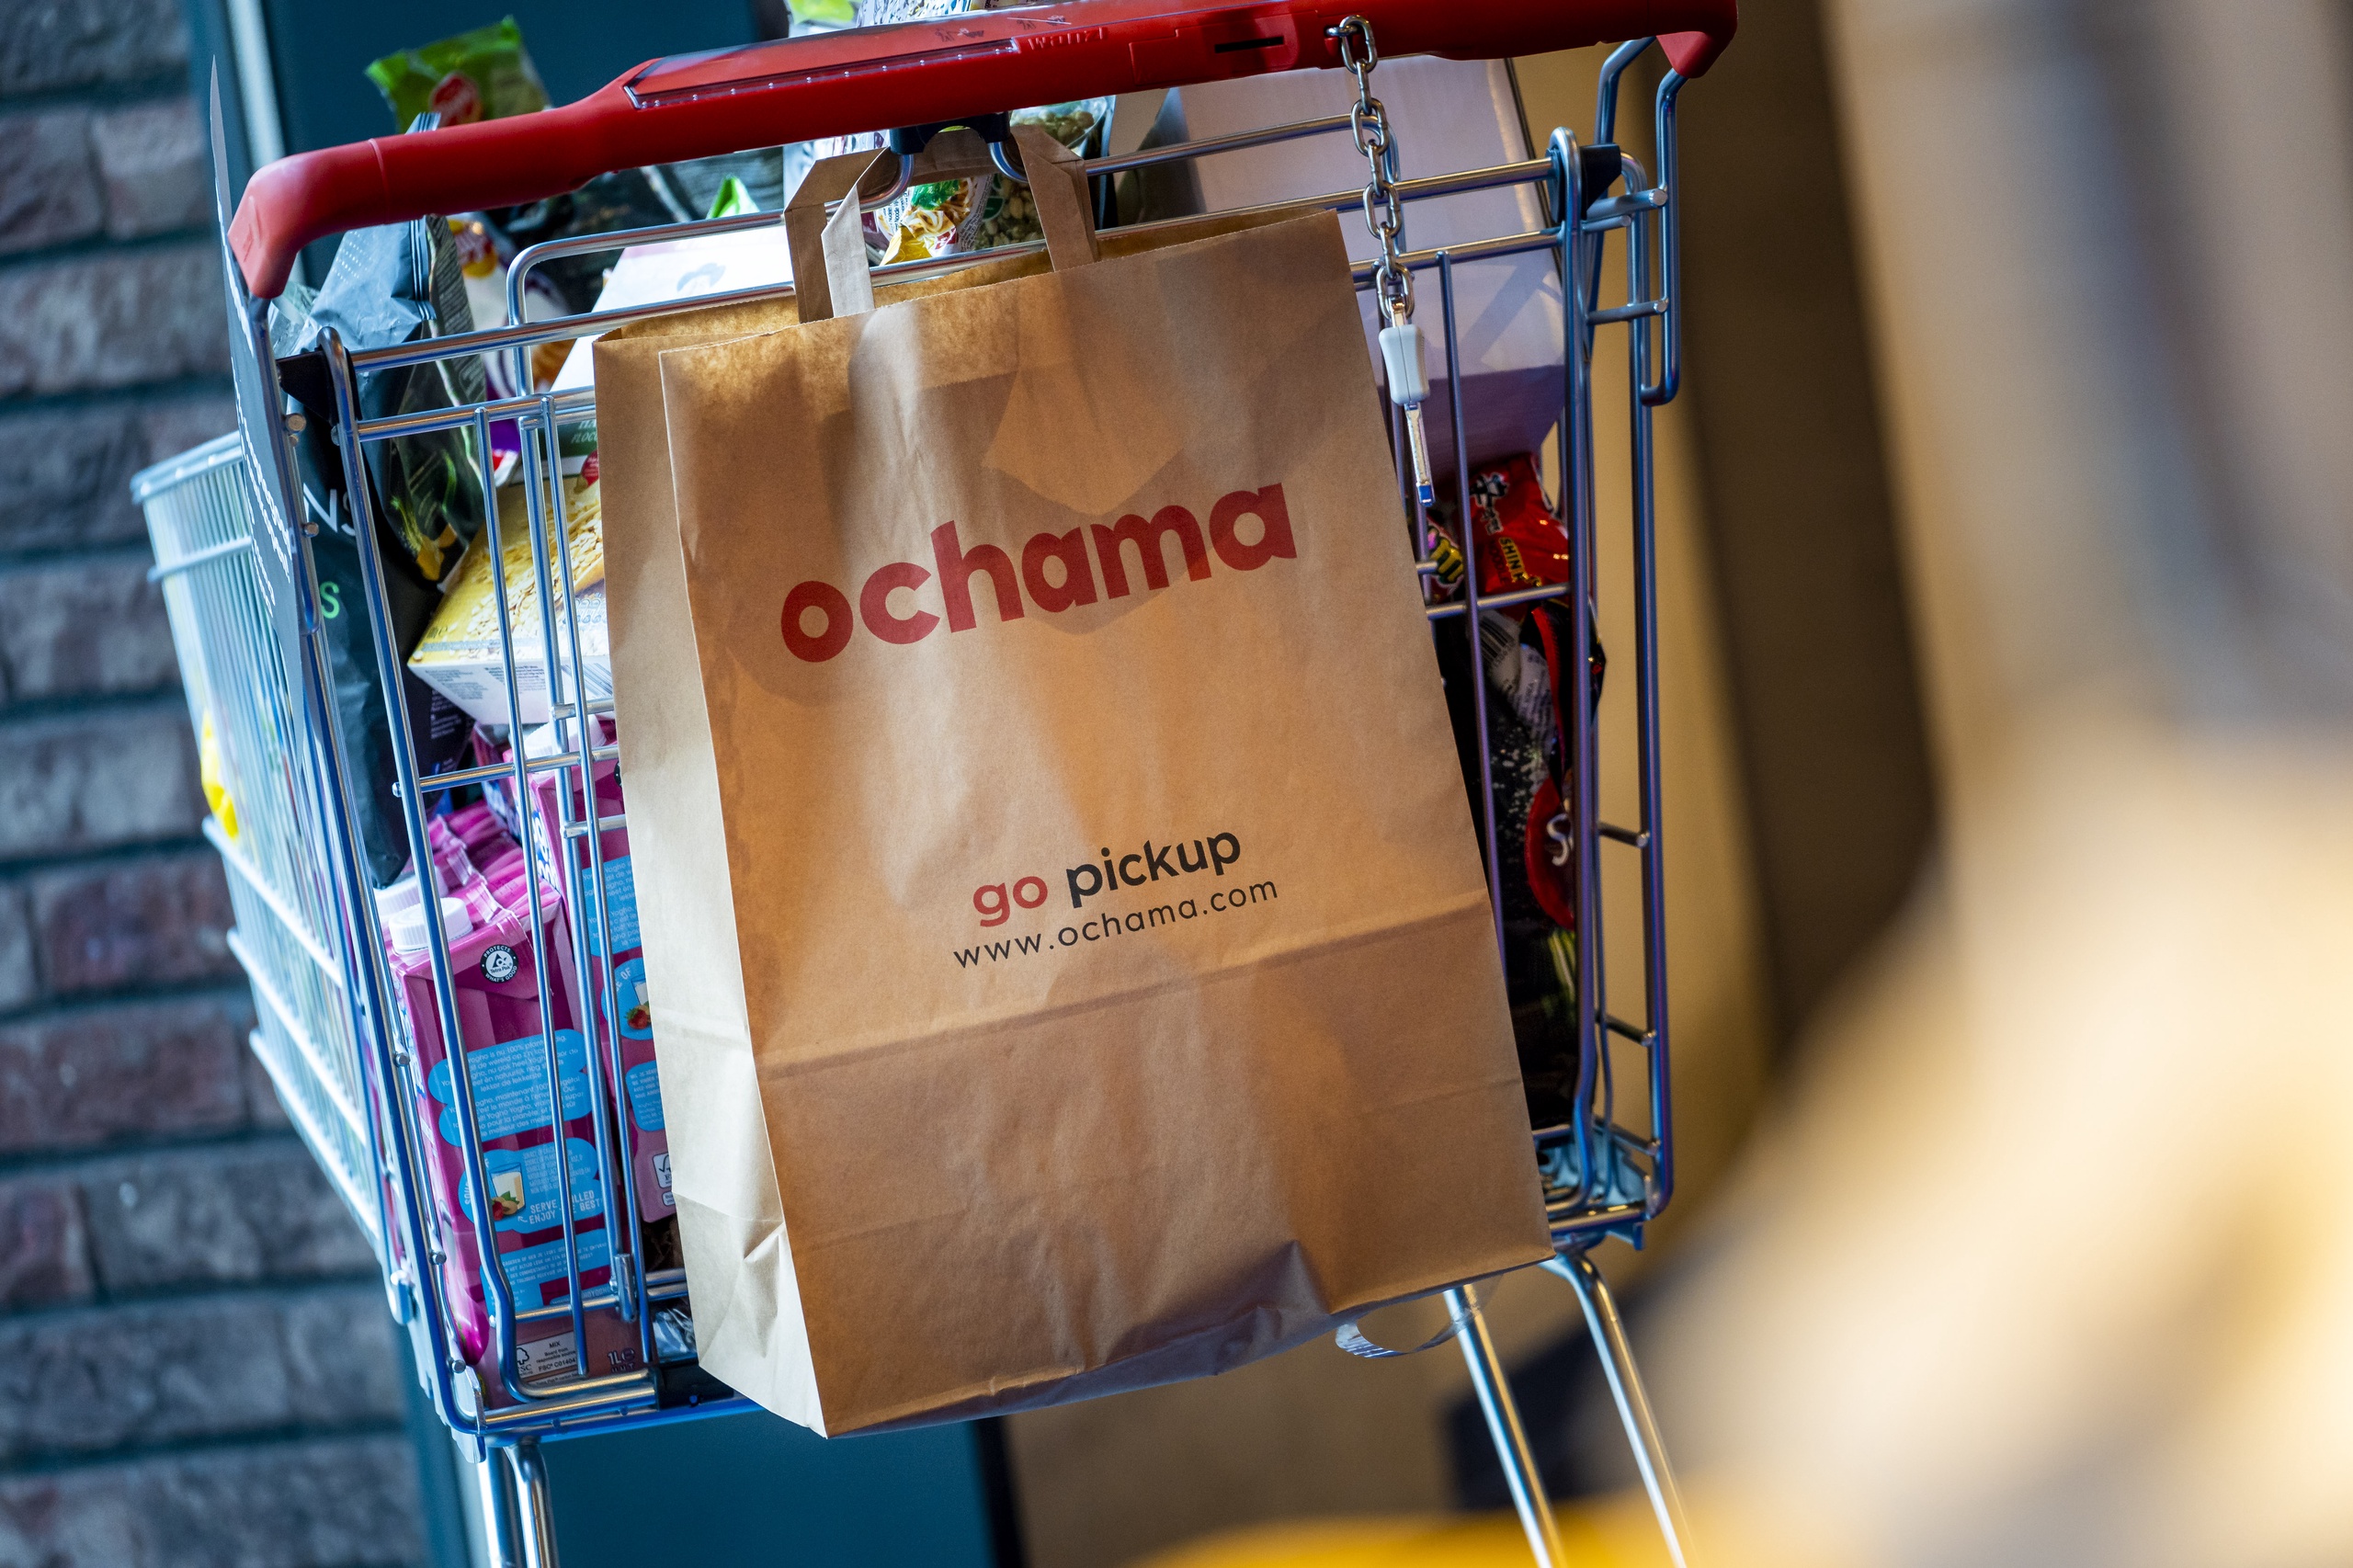 Internationale concurrentie voor Albert Heijn en Jumbo lonkt met de komst van de Chinese winkelketen Ochama. De webwinkel, die afhaalpunten heeft in Blokker-filialen, heeft het aantal afhaalpunten met vijftig stuks uitgebreid.